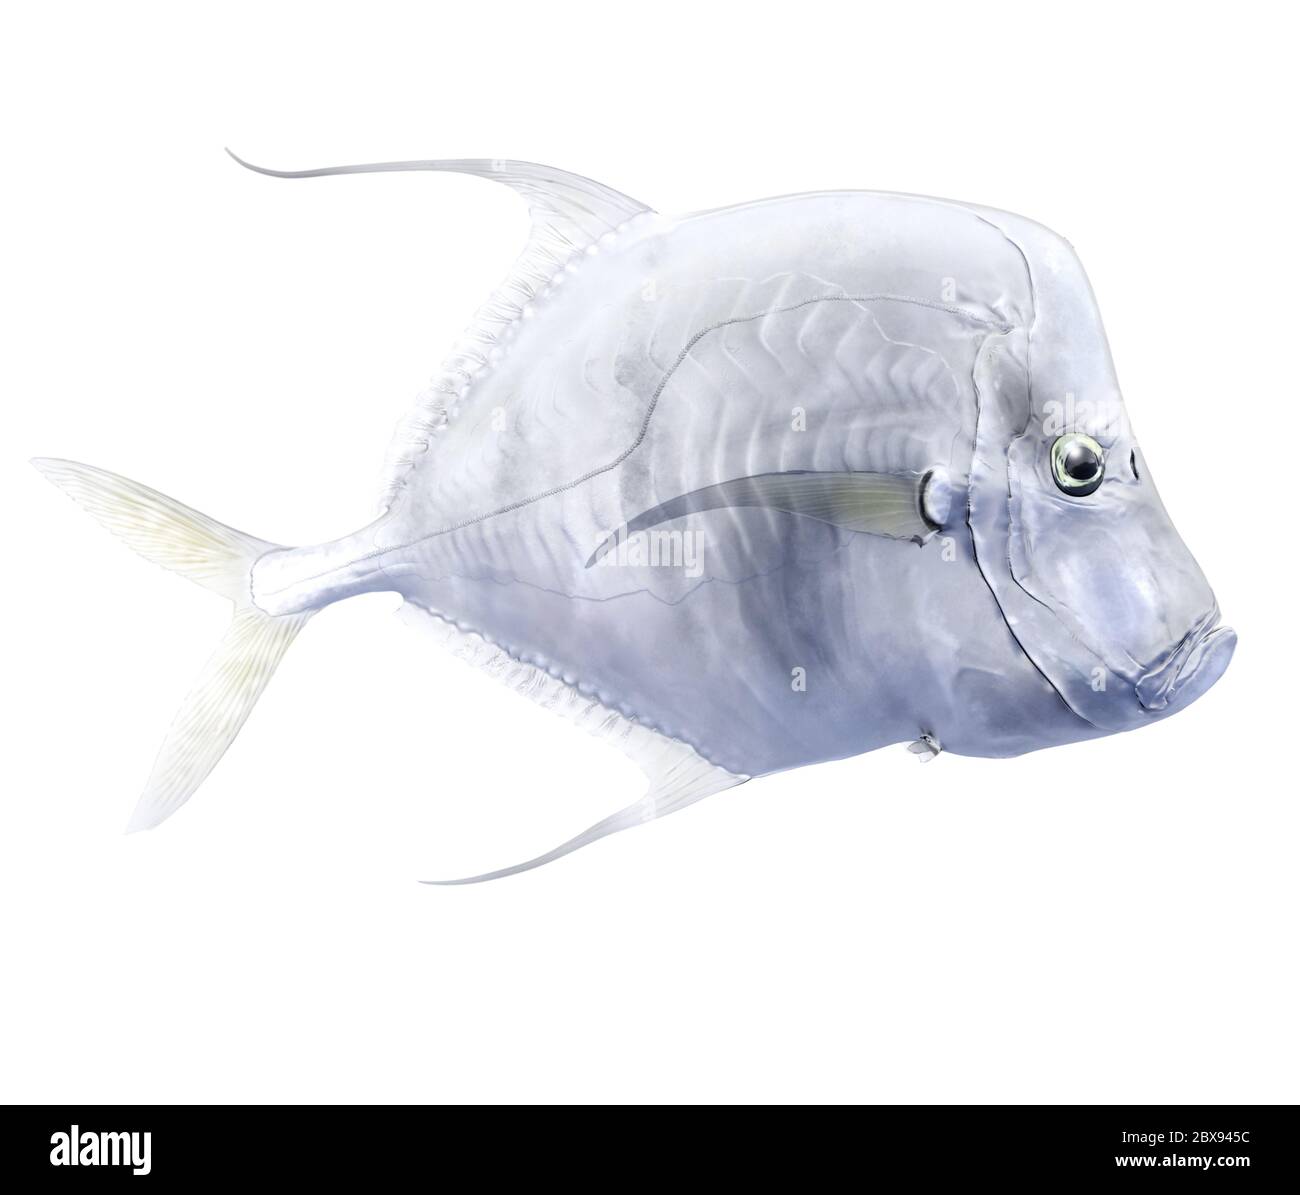 Illustration eines Fischs, eines Wildfisches der Familie Carangidae. Die schimmernden Schuppen machen sie unter Wasser fast unsichtbar. Stockfoto